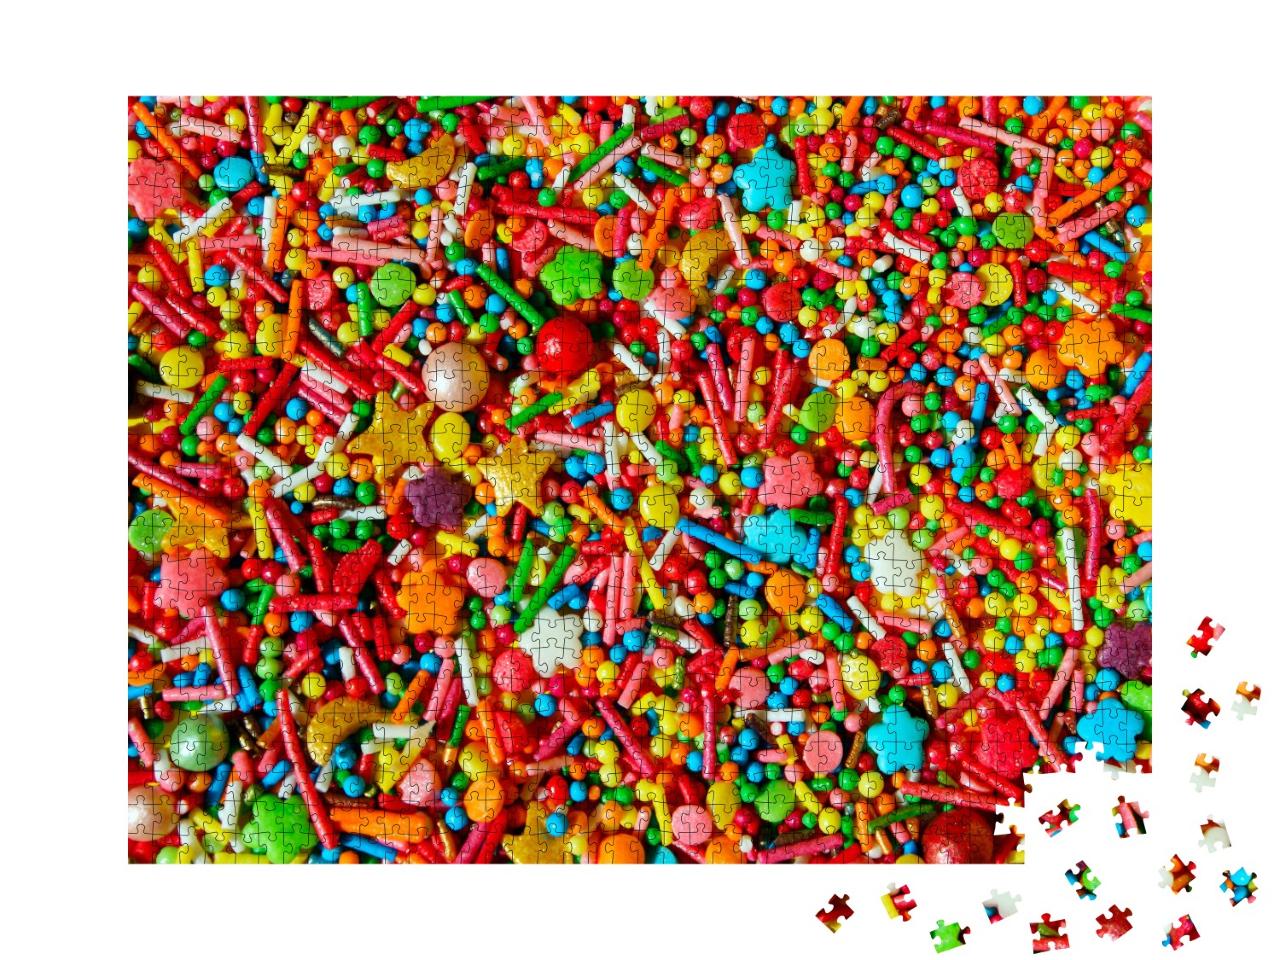 Puzzle de 1000 pièces « Crumble en sucre coloré »